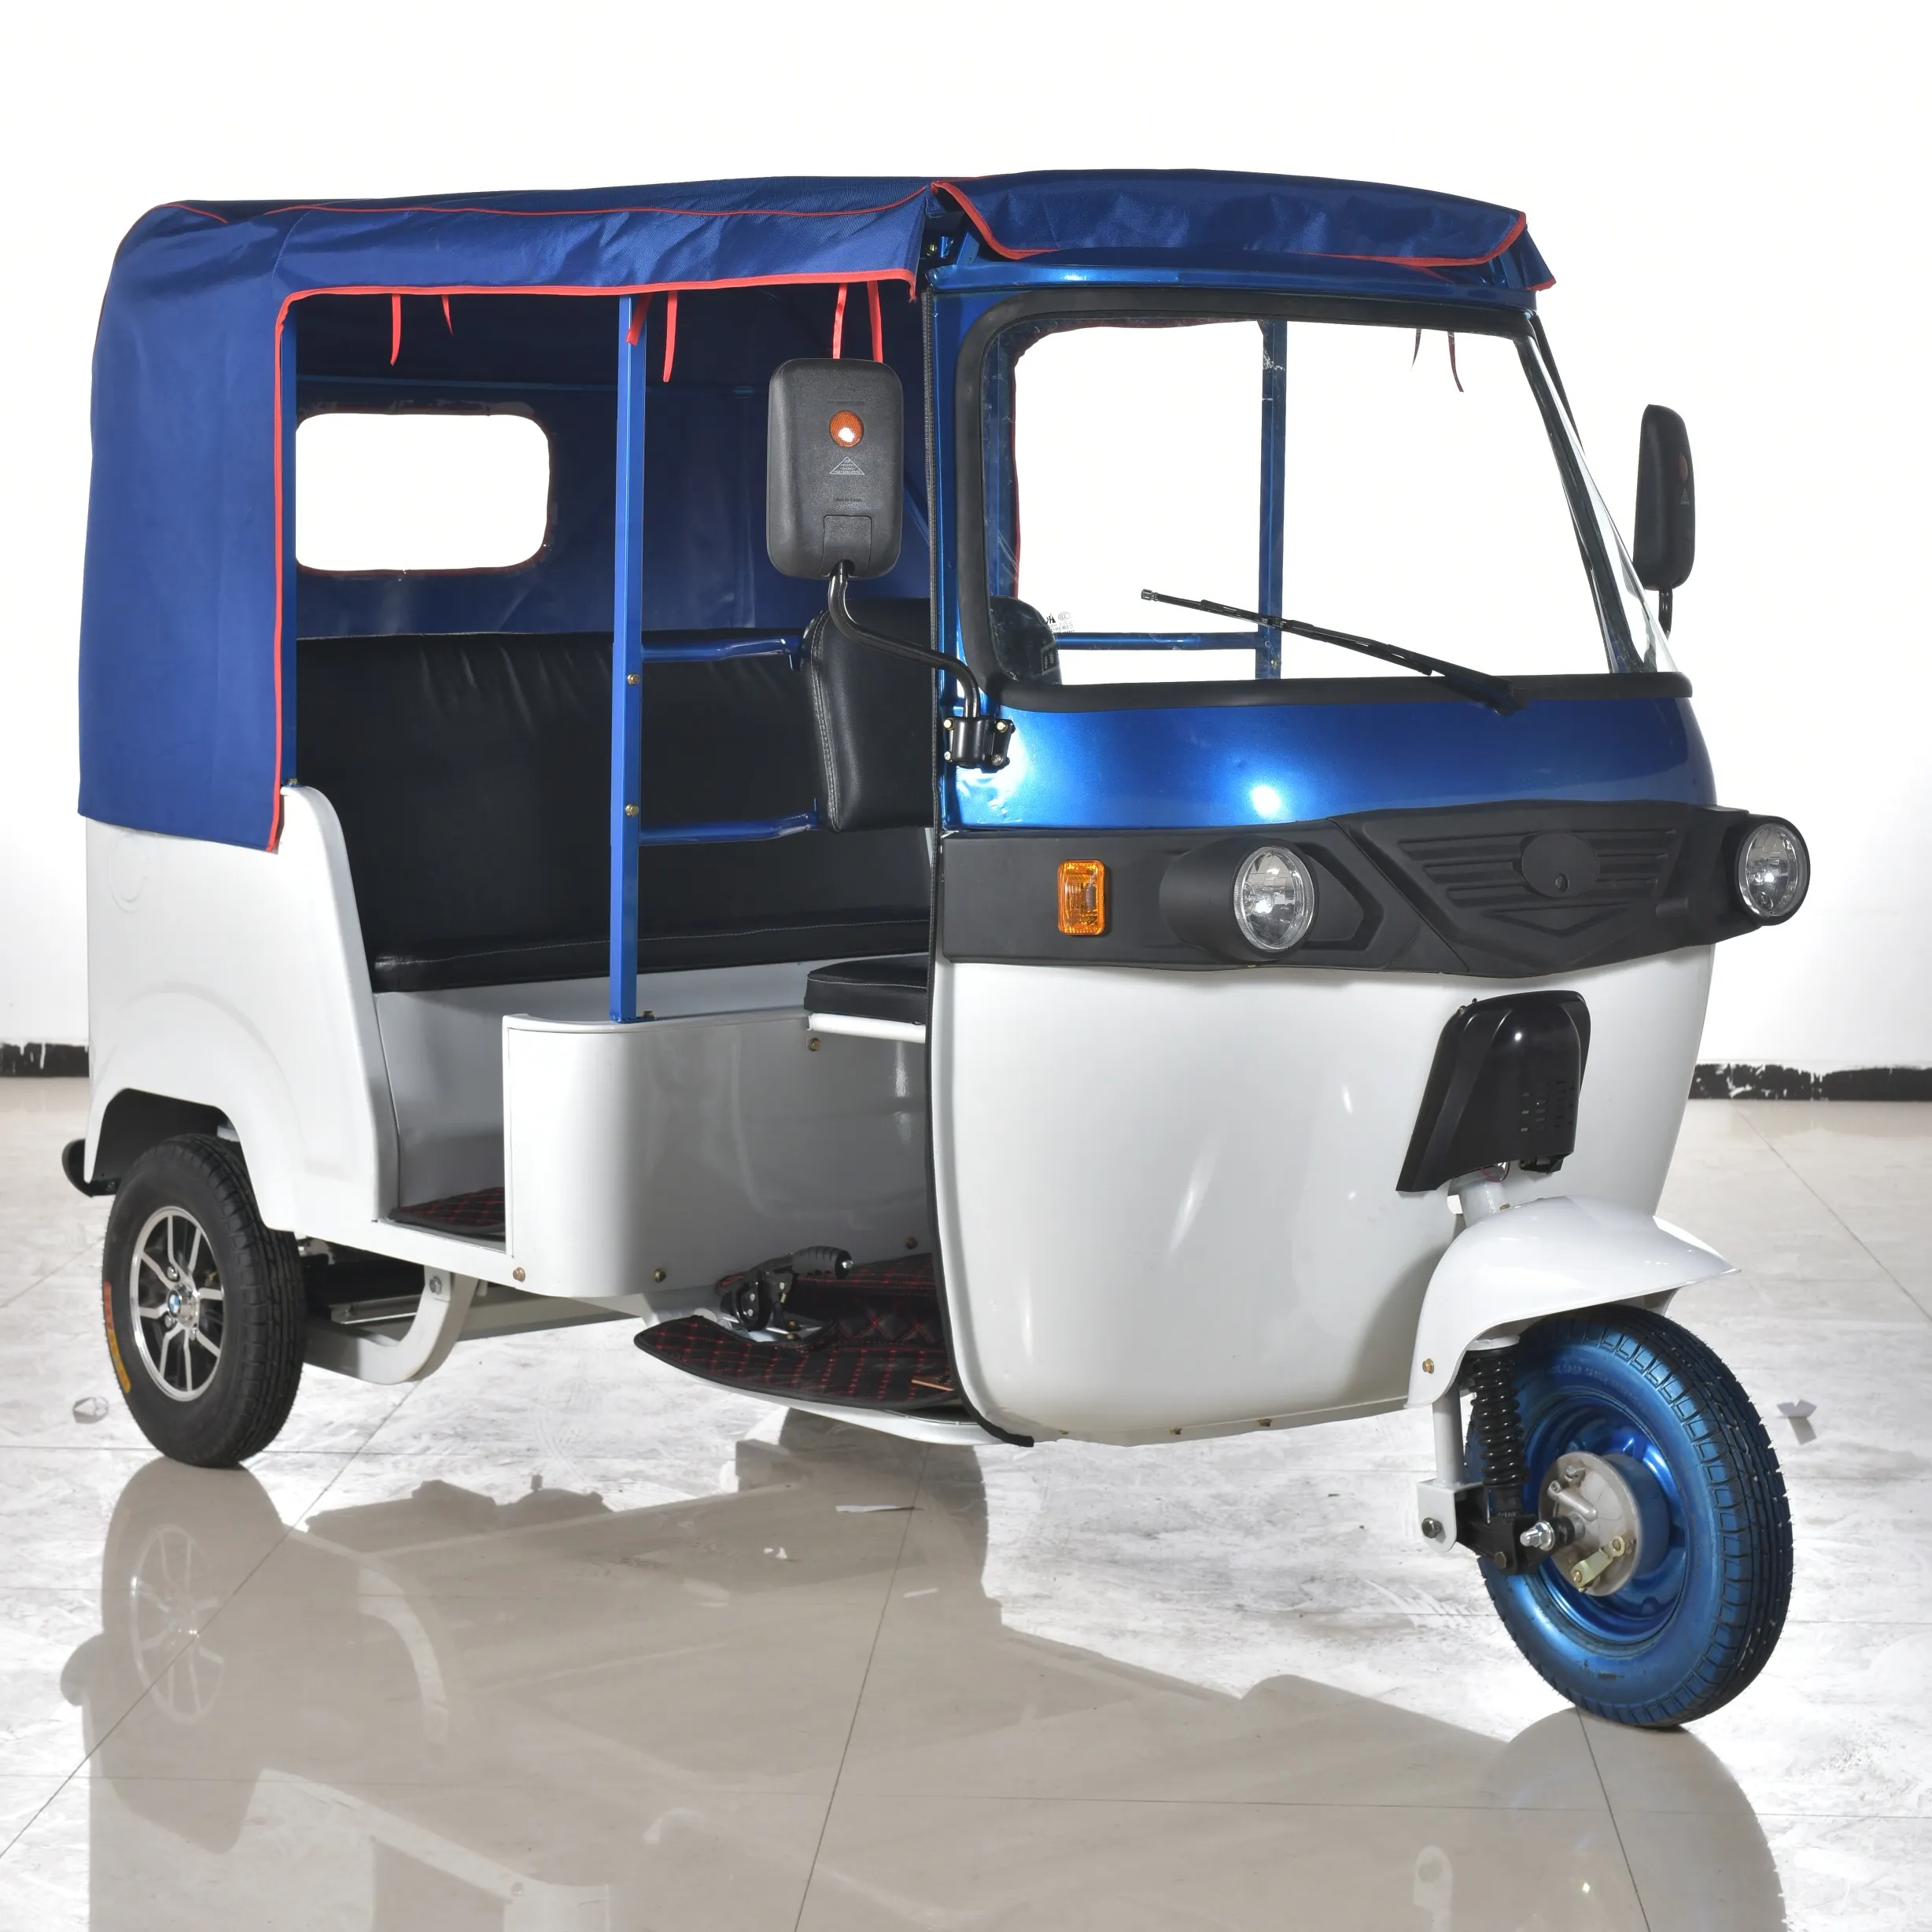 ליתיום סוללה e ריקשה בהודו אקו ידידותי CNG אוטומטי ריקשה הטוב ביותר באיכות חשמלי שלושה גלגלים